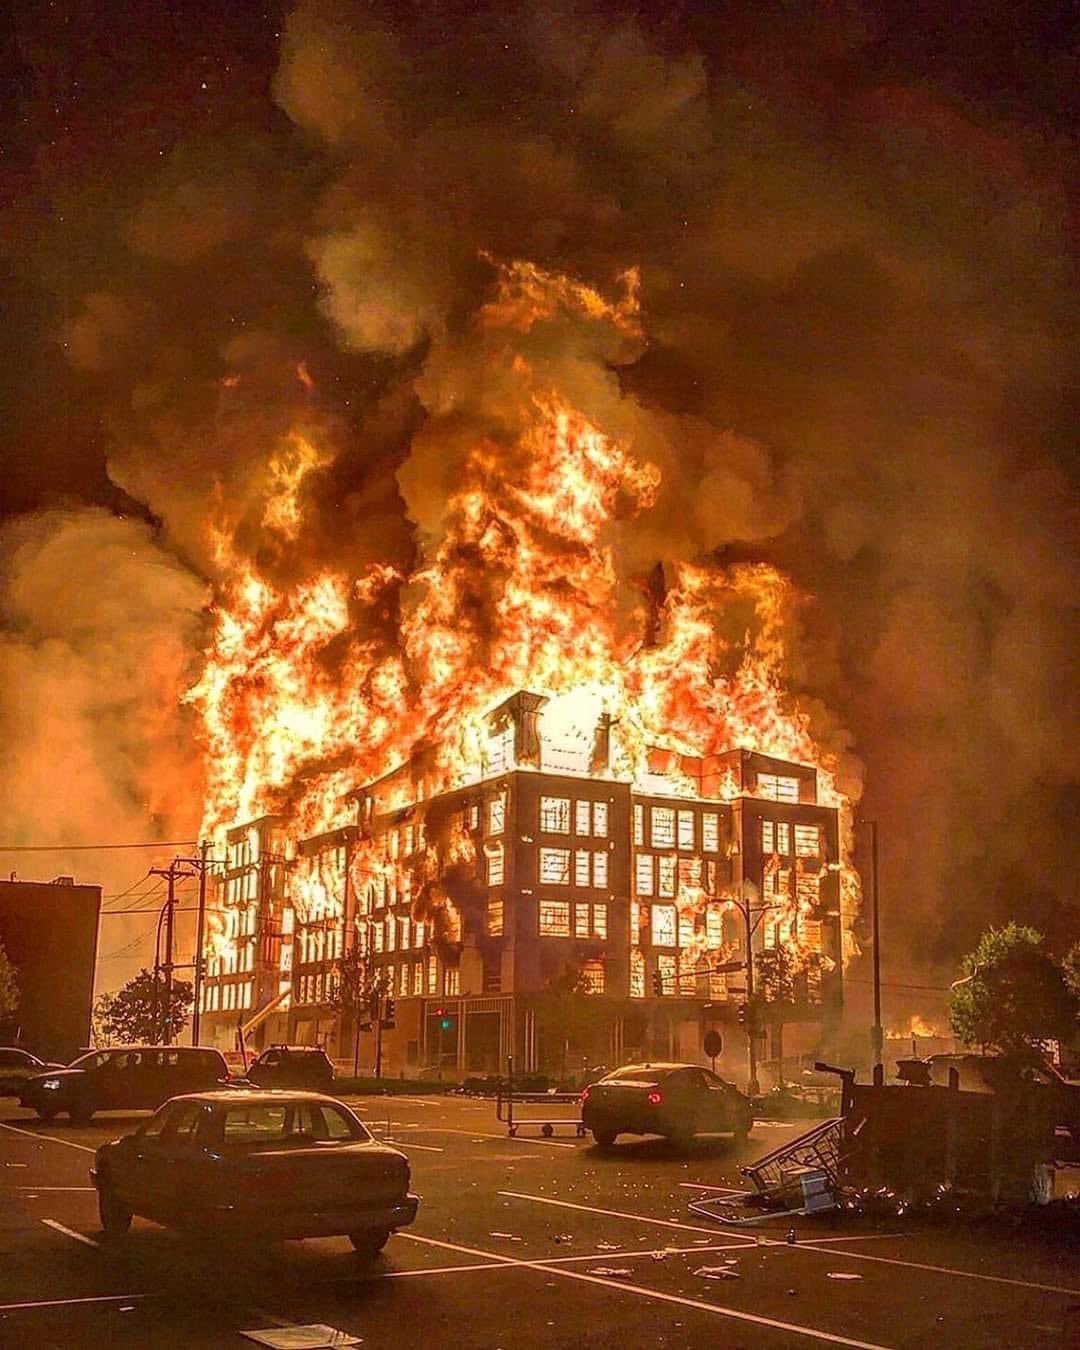 Police building burning in Minnesota